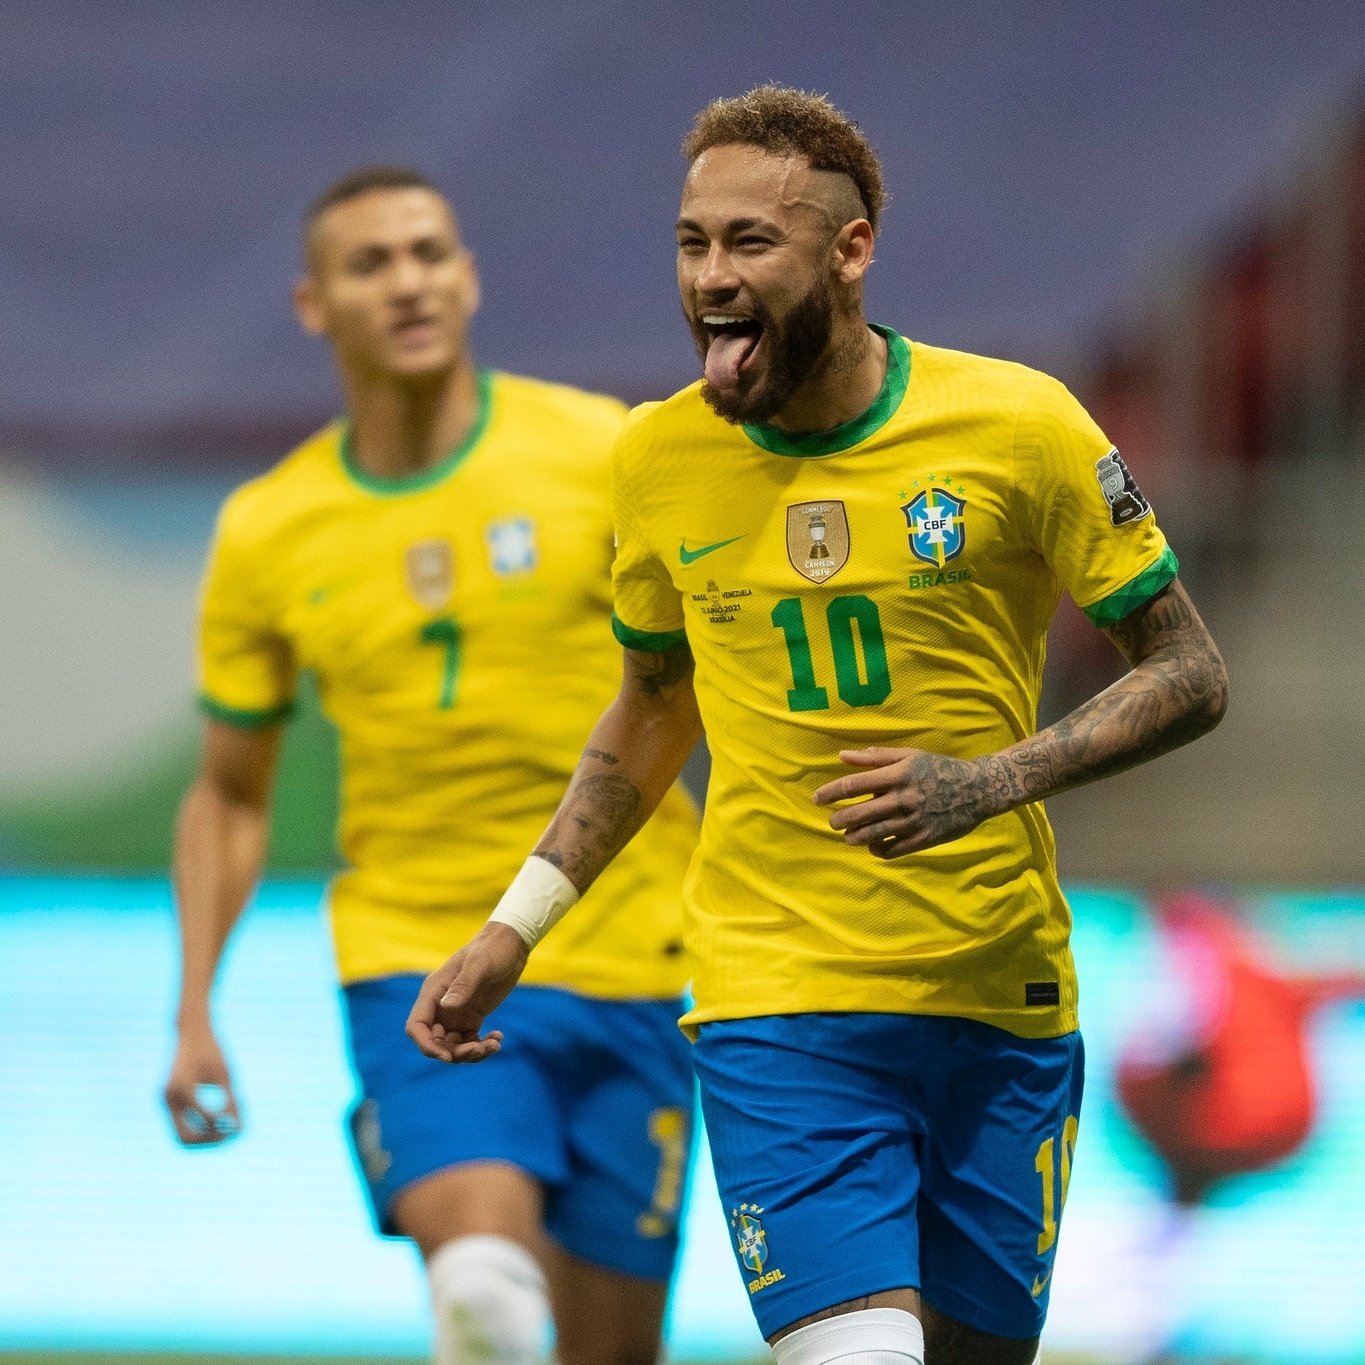 Em imagens geradas por IA, Neymar e Pelé viram personagens do